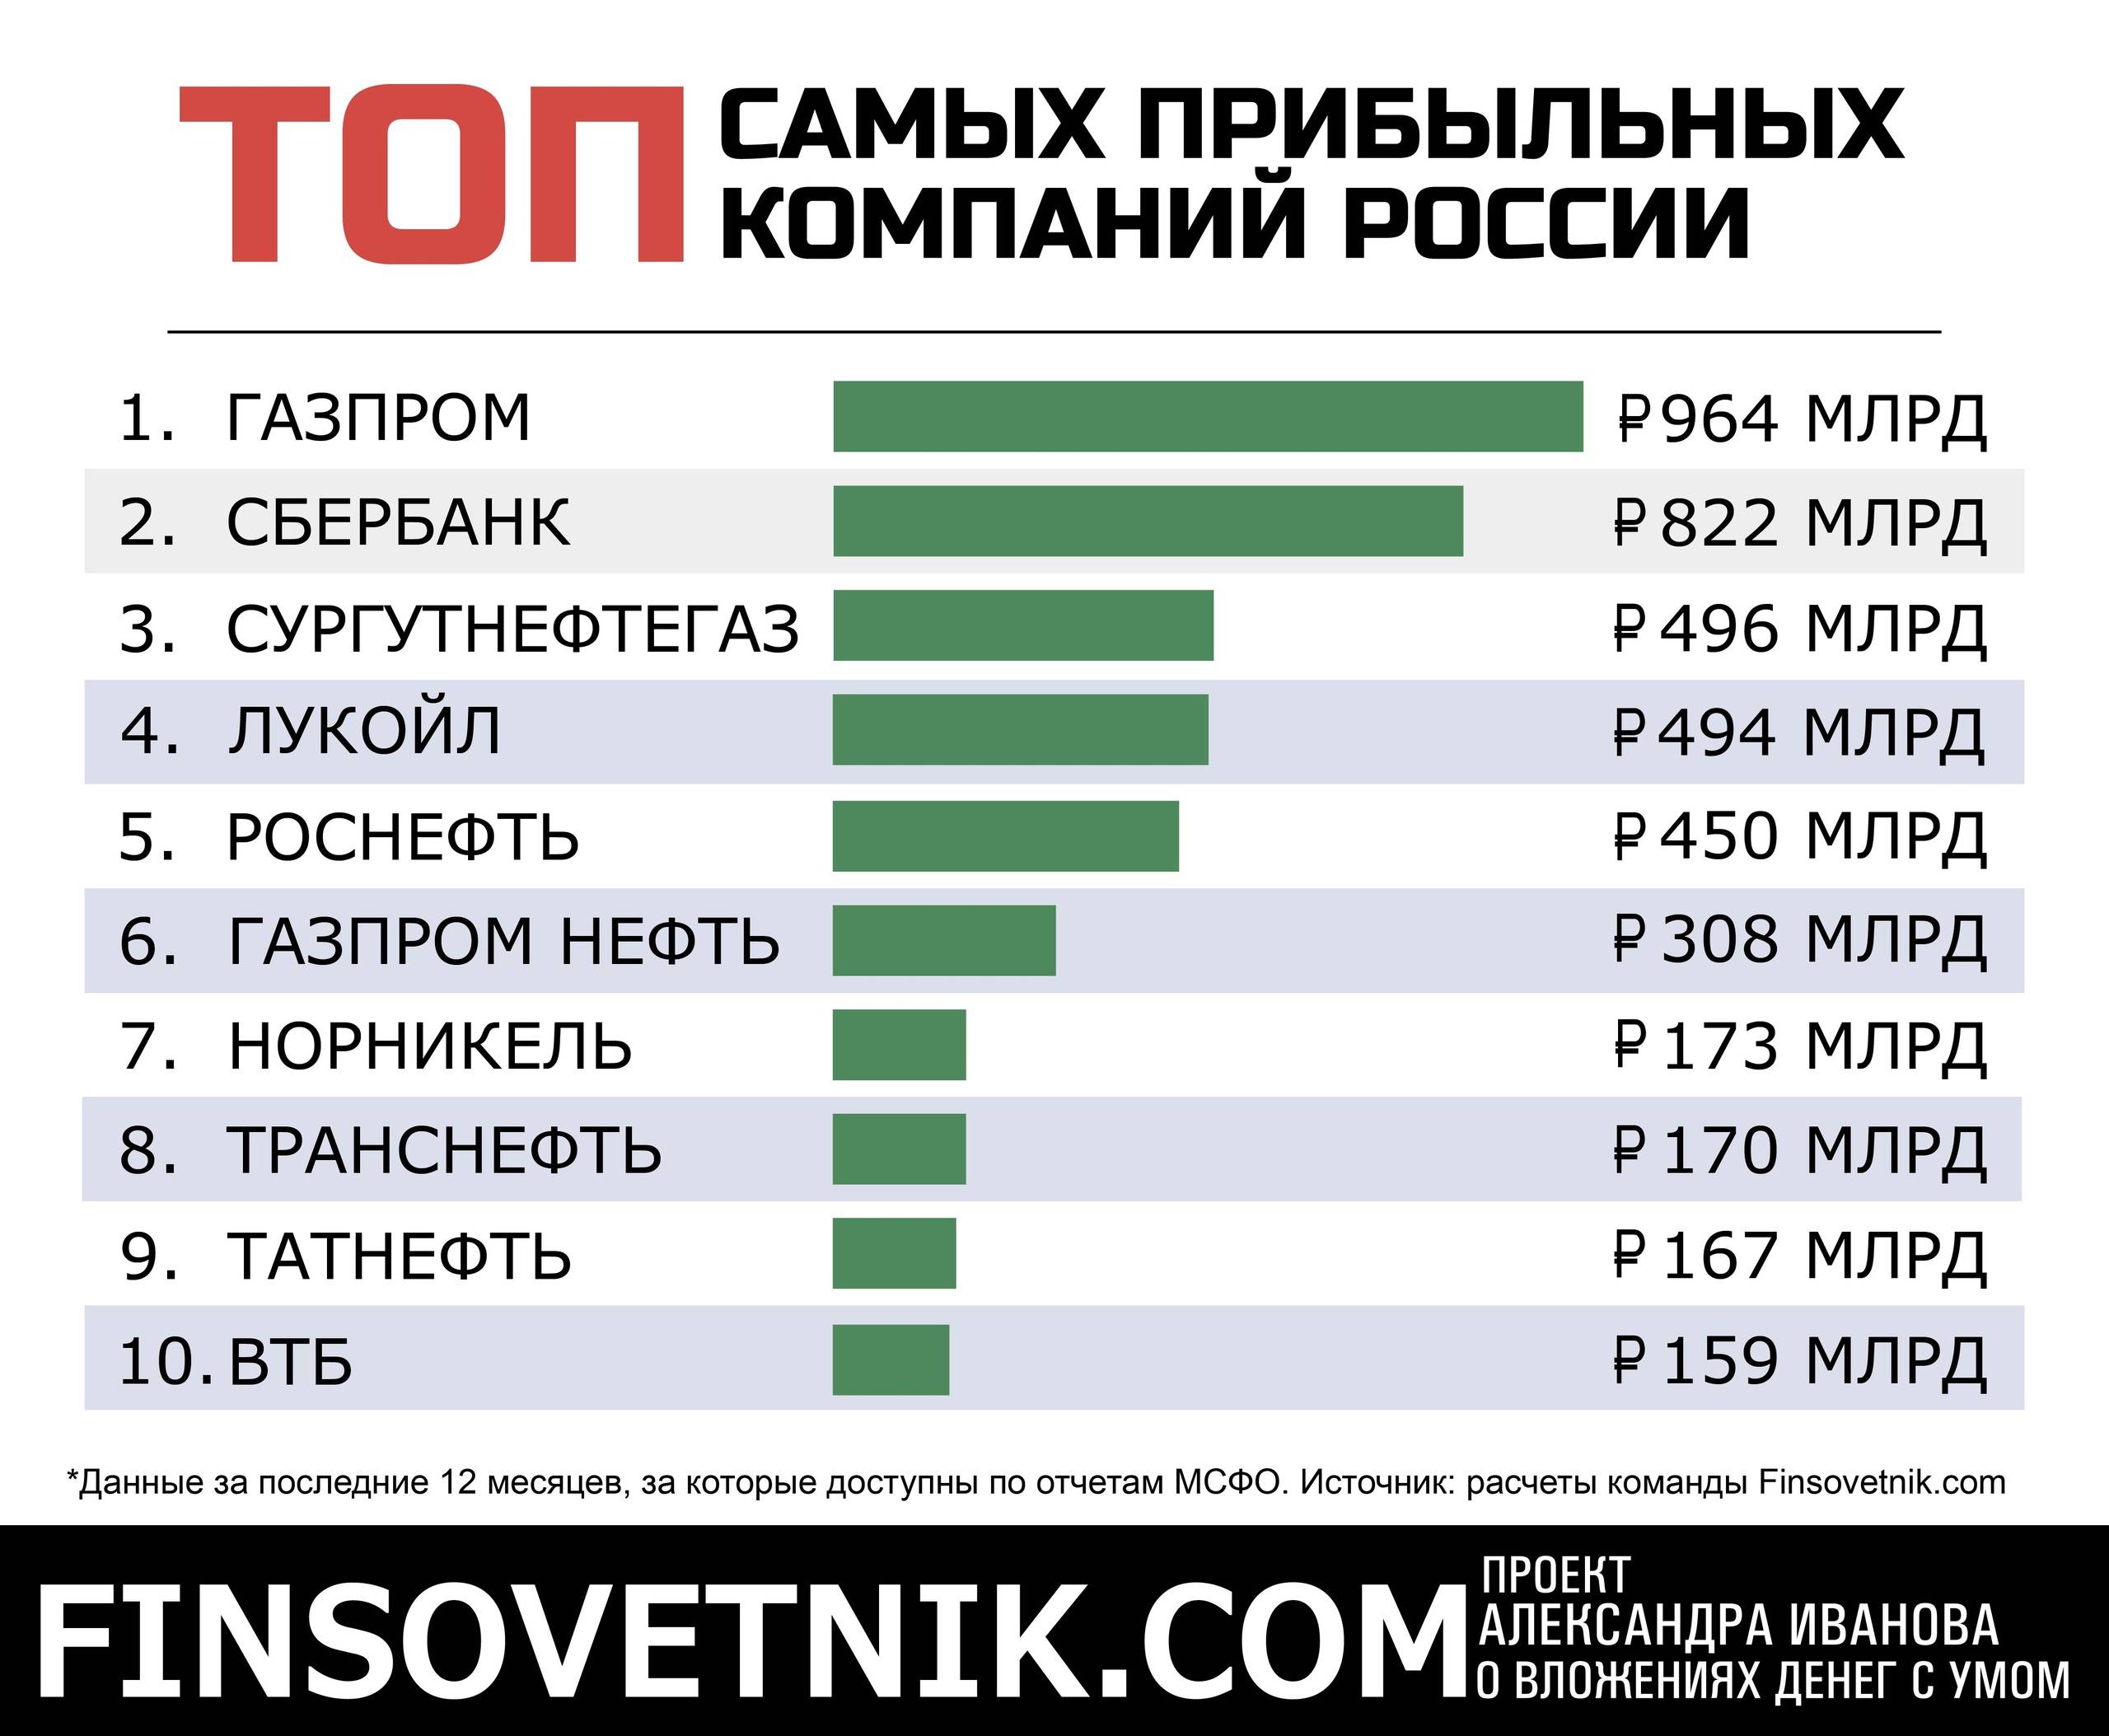 Насколько очень. Самые прибыльные компании. Самый прибыльный бизнес в России. Какой бизнес самый прибыльный. Самые прибыльные предприятия.